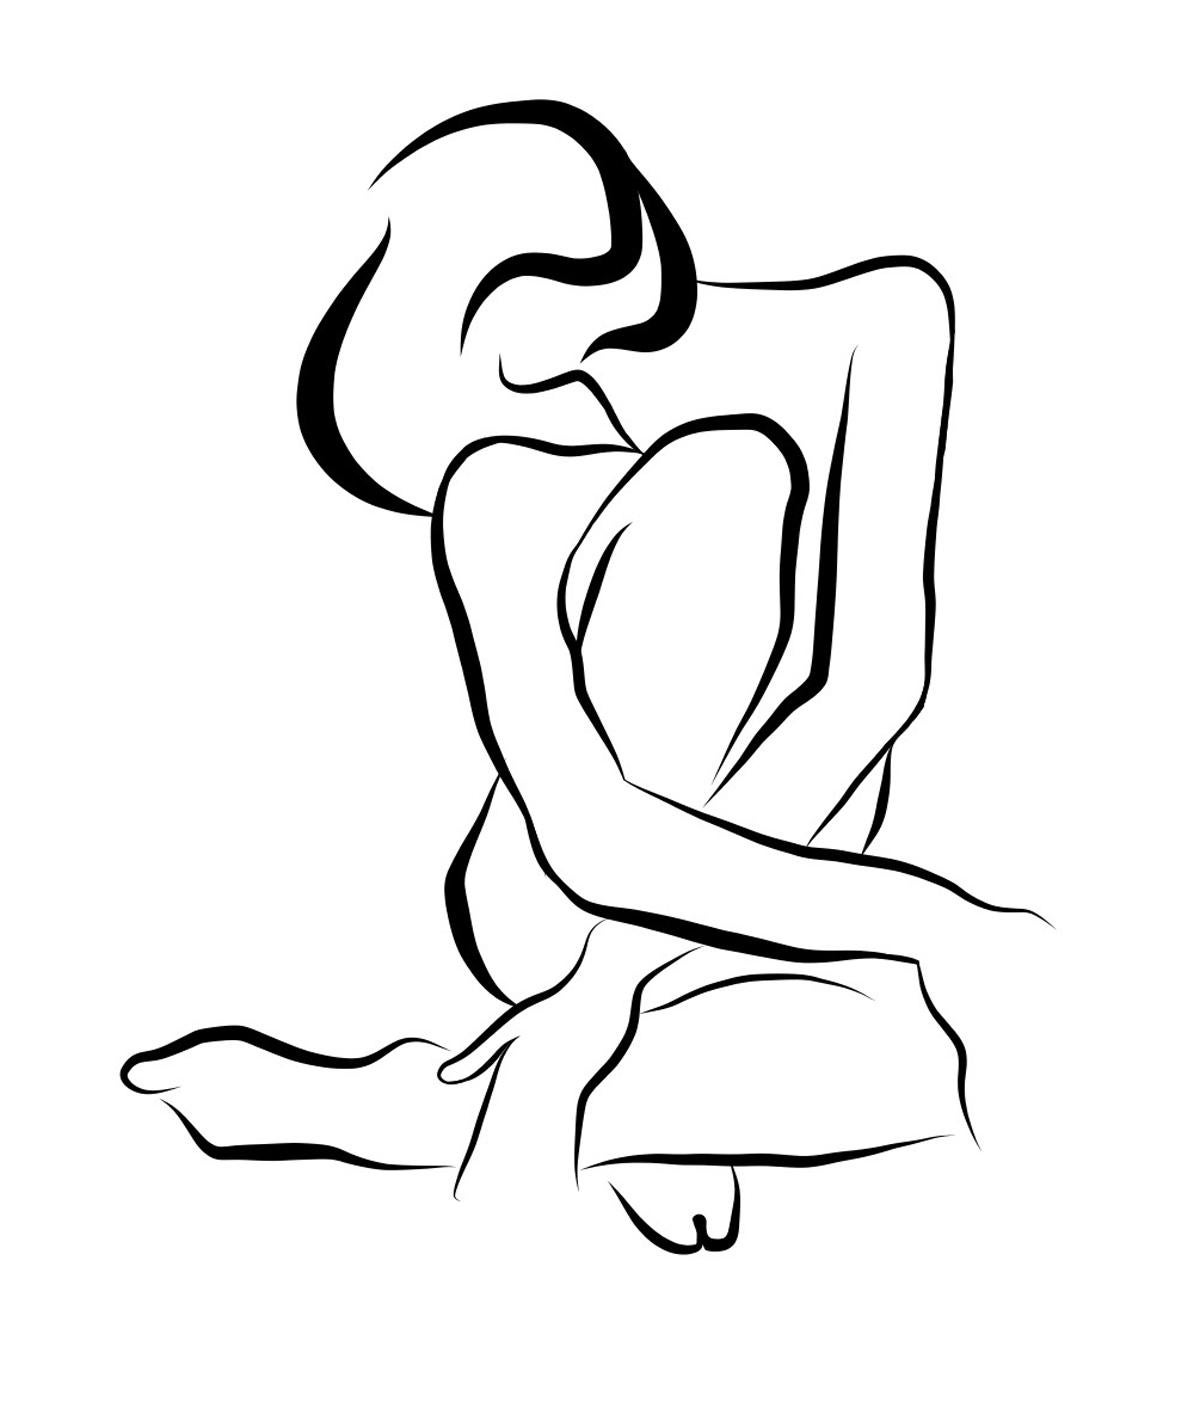 Michael Binkley Nude Print – Haiku #19, 2/50 - Digitale Vector-Zeichnung B&W sitzende weibliche nackte weibliche Aktfigur, Figur